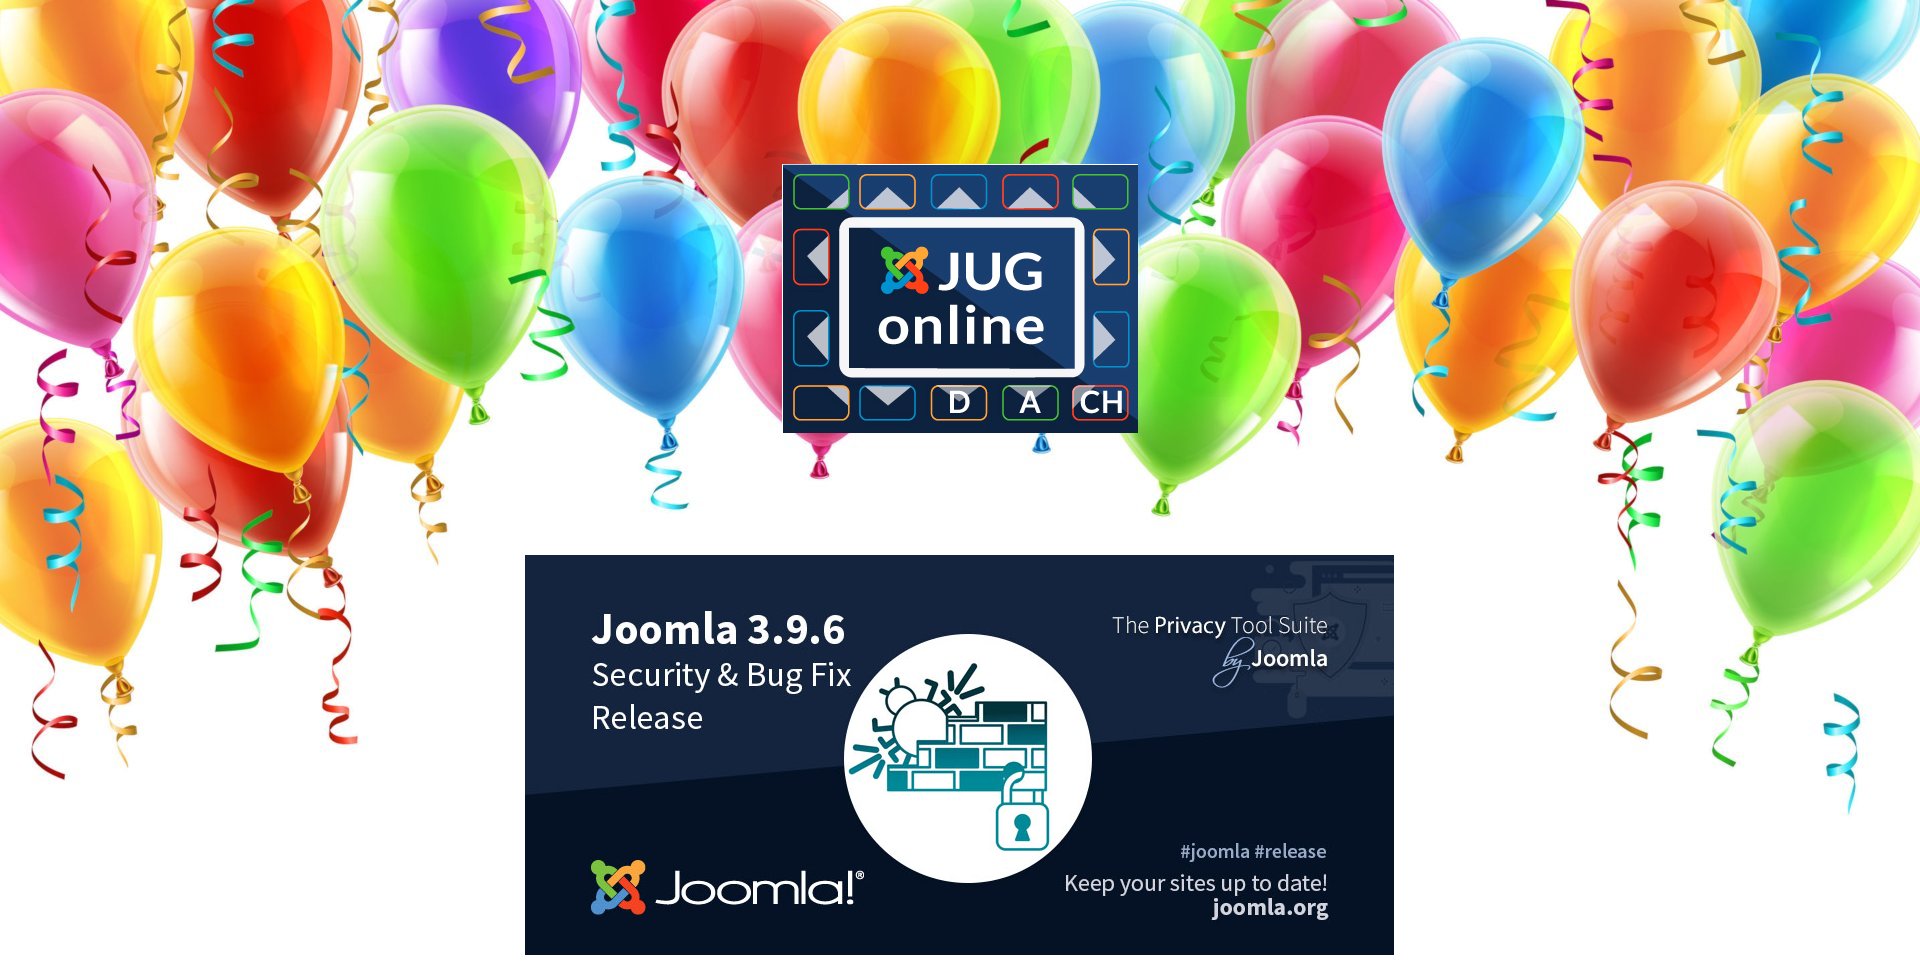 20 Years Medialekt - 20% Discount - JUG Talk & Joomla Update